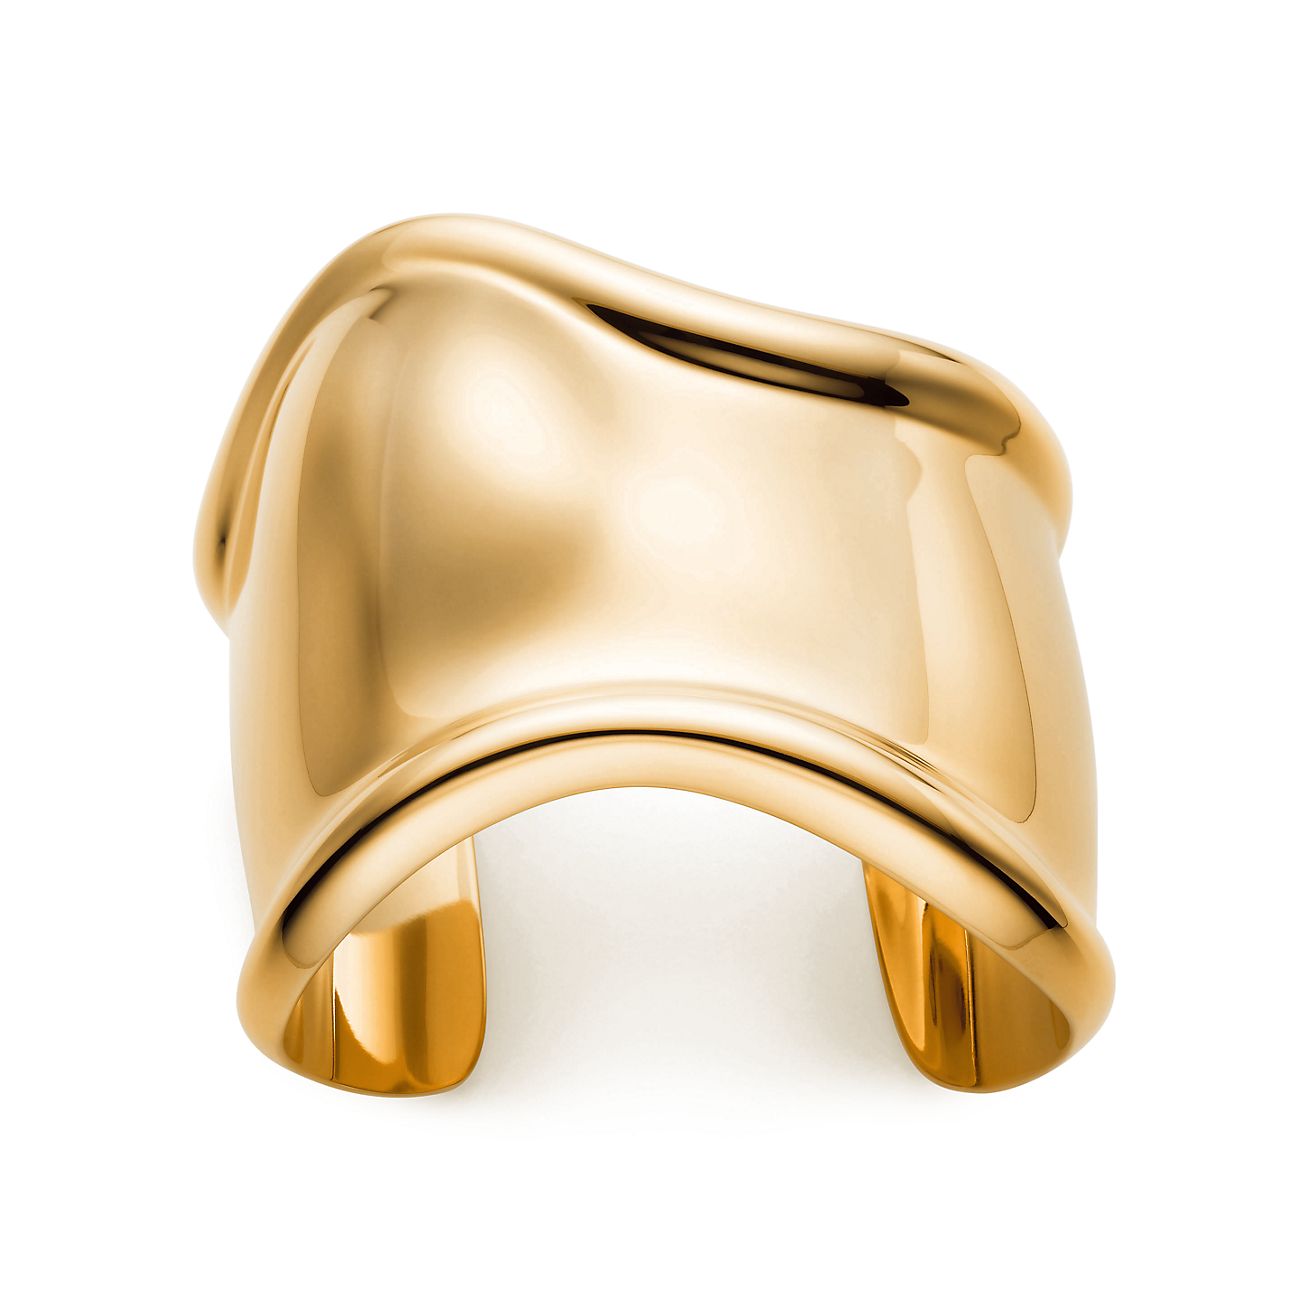 Elsa Peretti Medium Bone Cuff Bracelet in 18K Gold, 61 mm